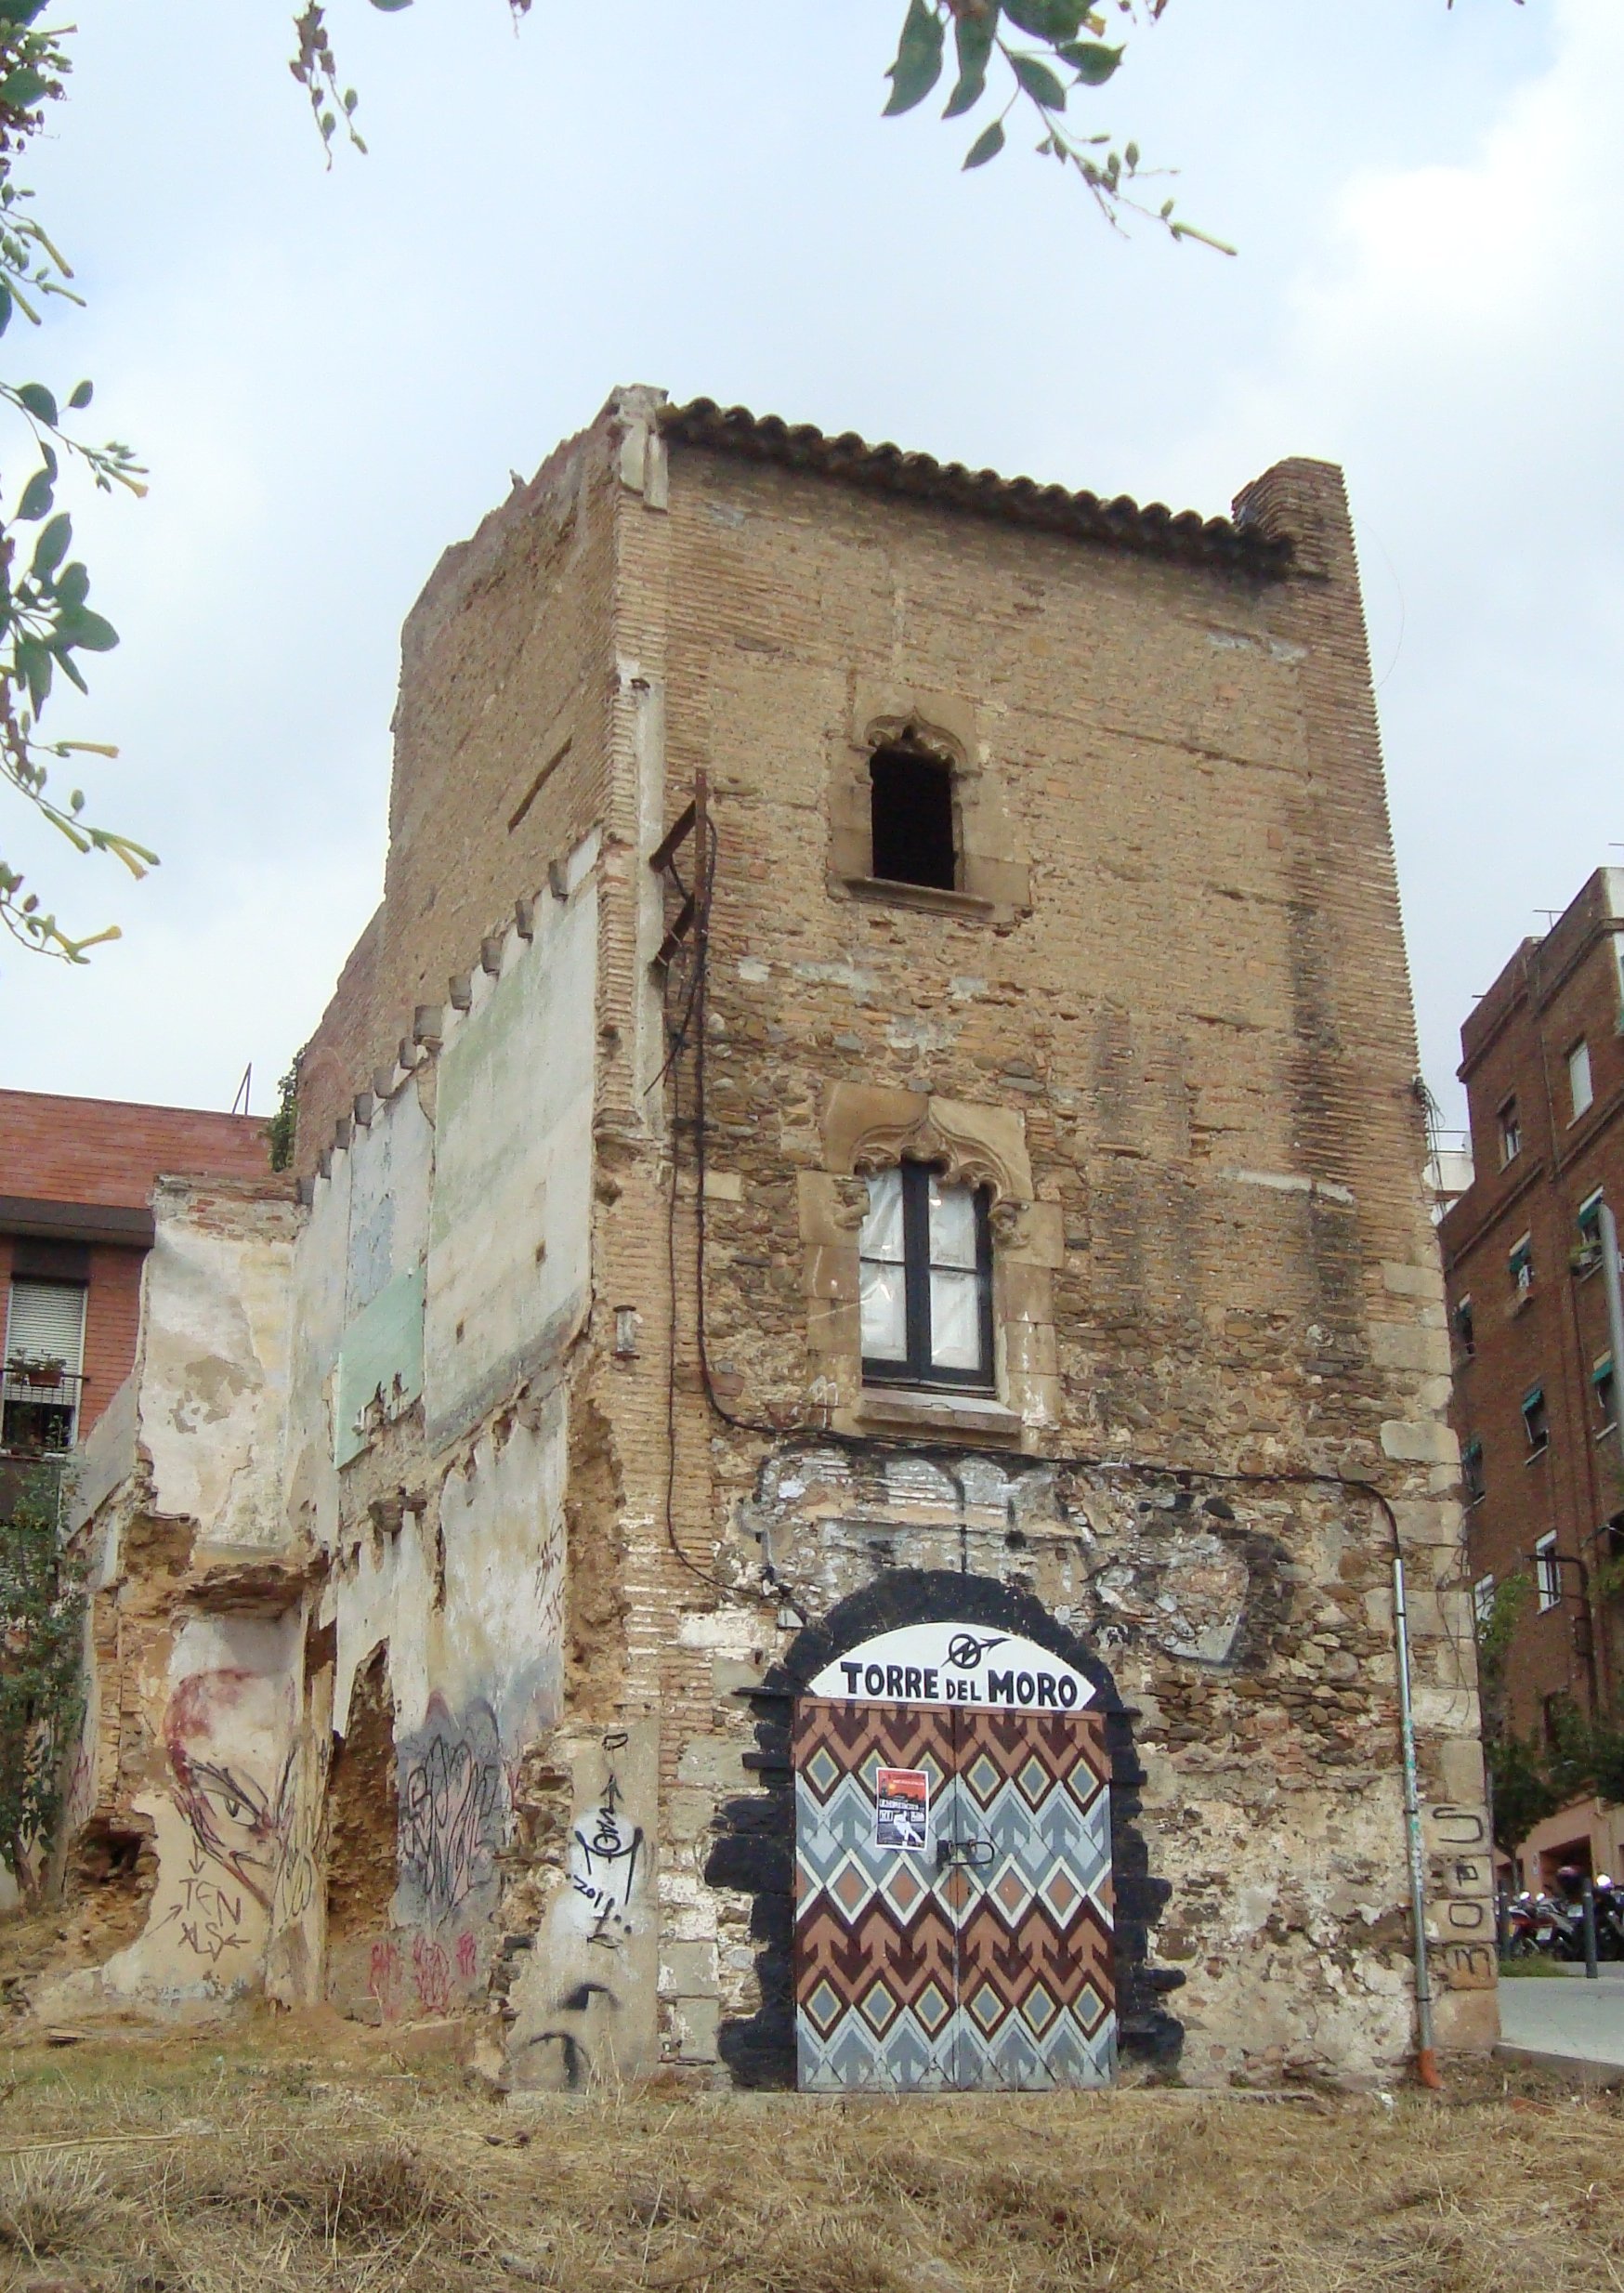 Precintada per perill d’esfondrament una torre d’Horta del segle XVI